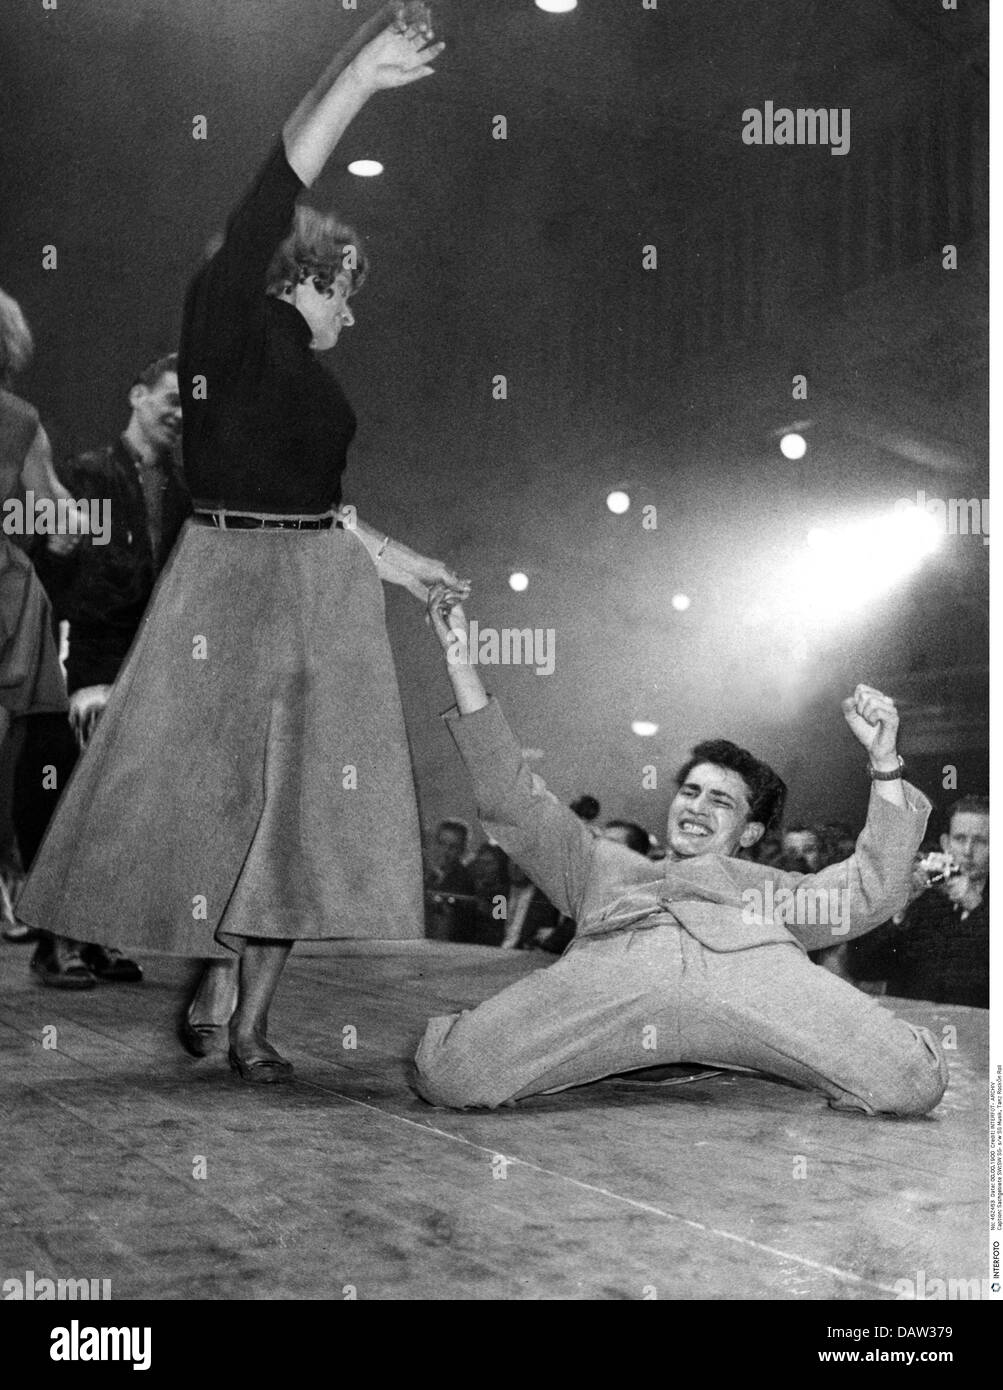 Danse, Rock'n Roll, couple danse Rock'n Roll, concours de danse, 1956, droits supplémentaires-Clearences-non disponible Banque D'Images